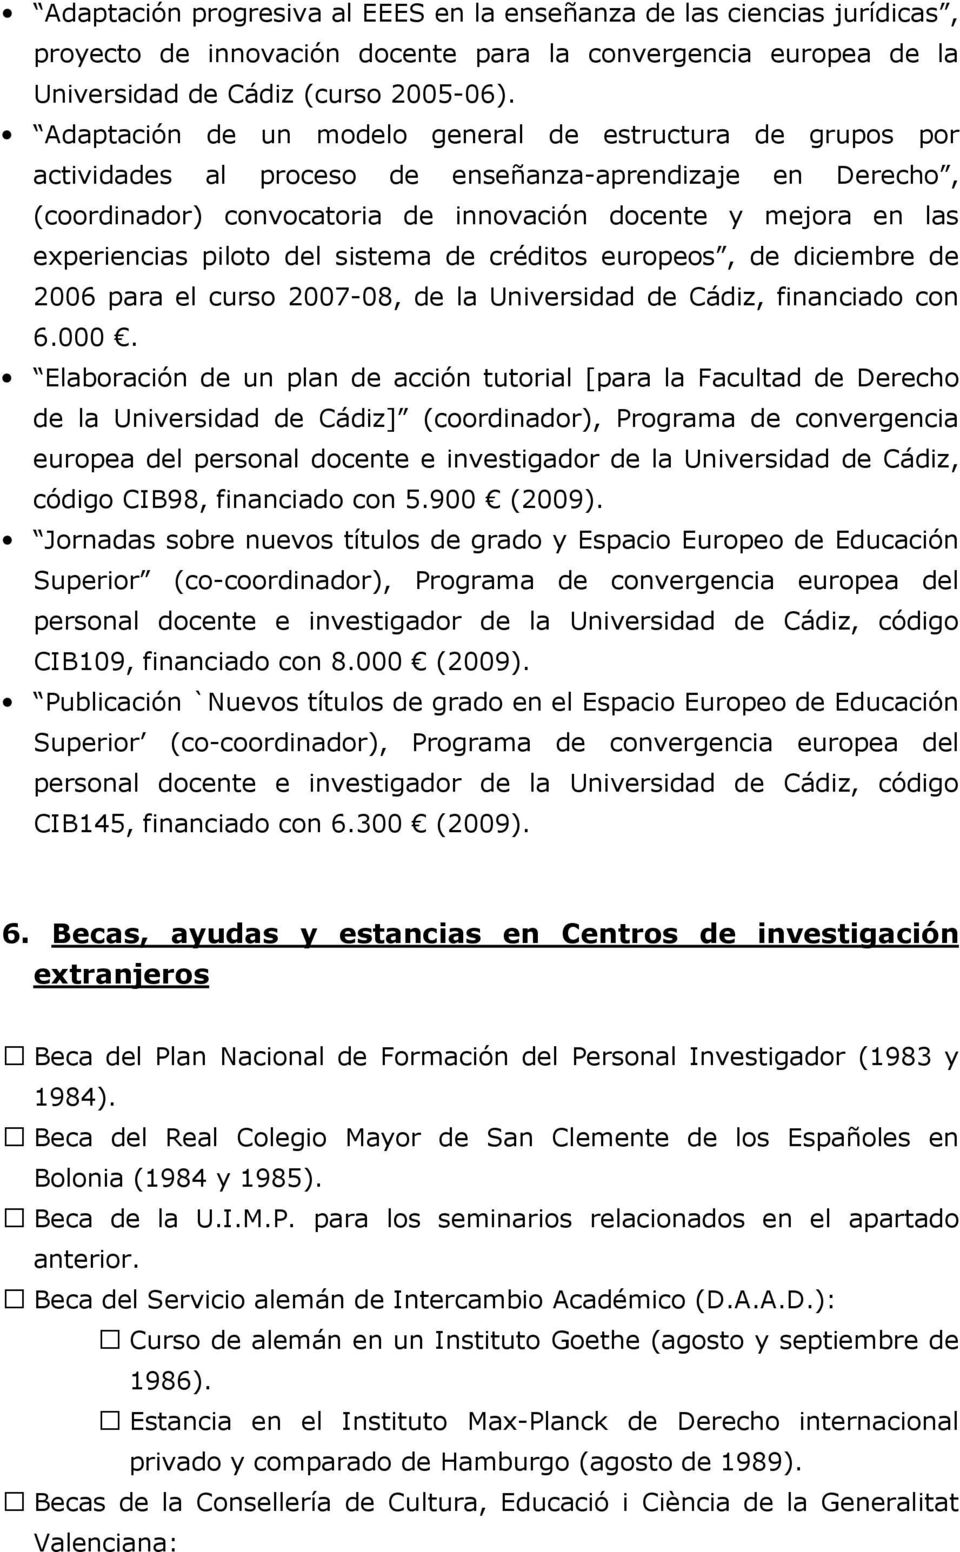 piloto del sistema de créditos europeos, de diciembre de 2006 para el curso 2007-08, de la Universidad de Cádiz, financiado con 6.000.